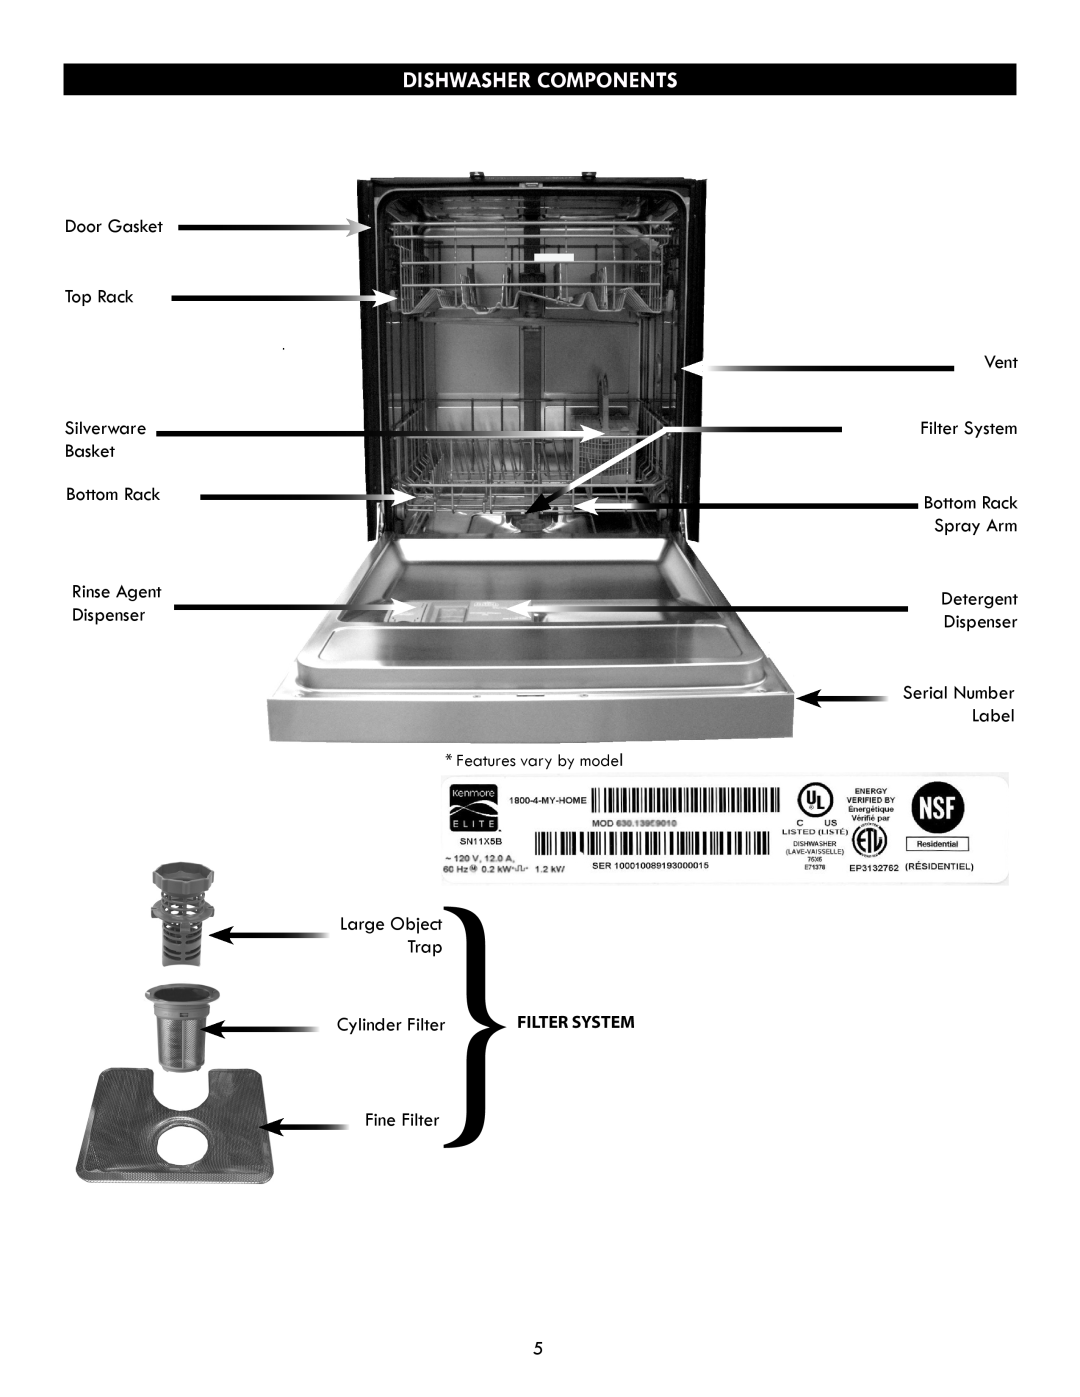 Kenmore 630.7793 manual Dishwasher Components, Cylinder Filter, Filter System, Bottom Rack Spray Arm 